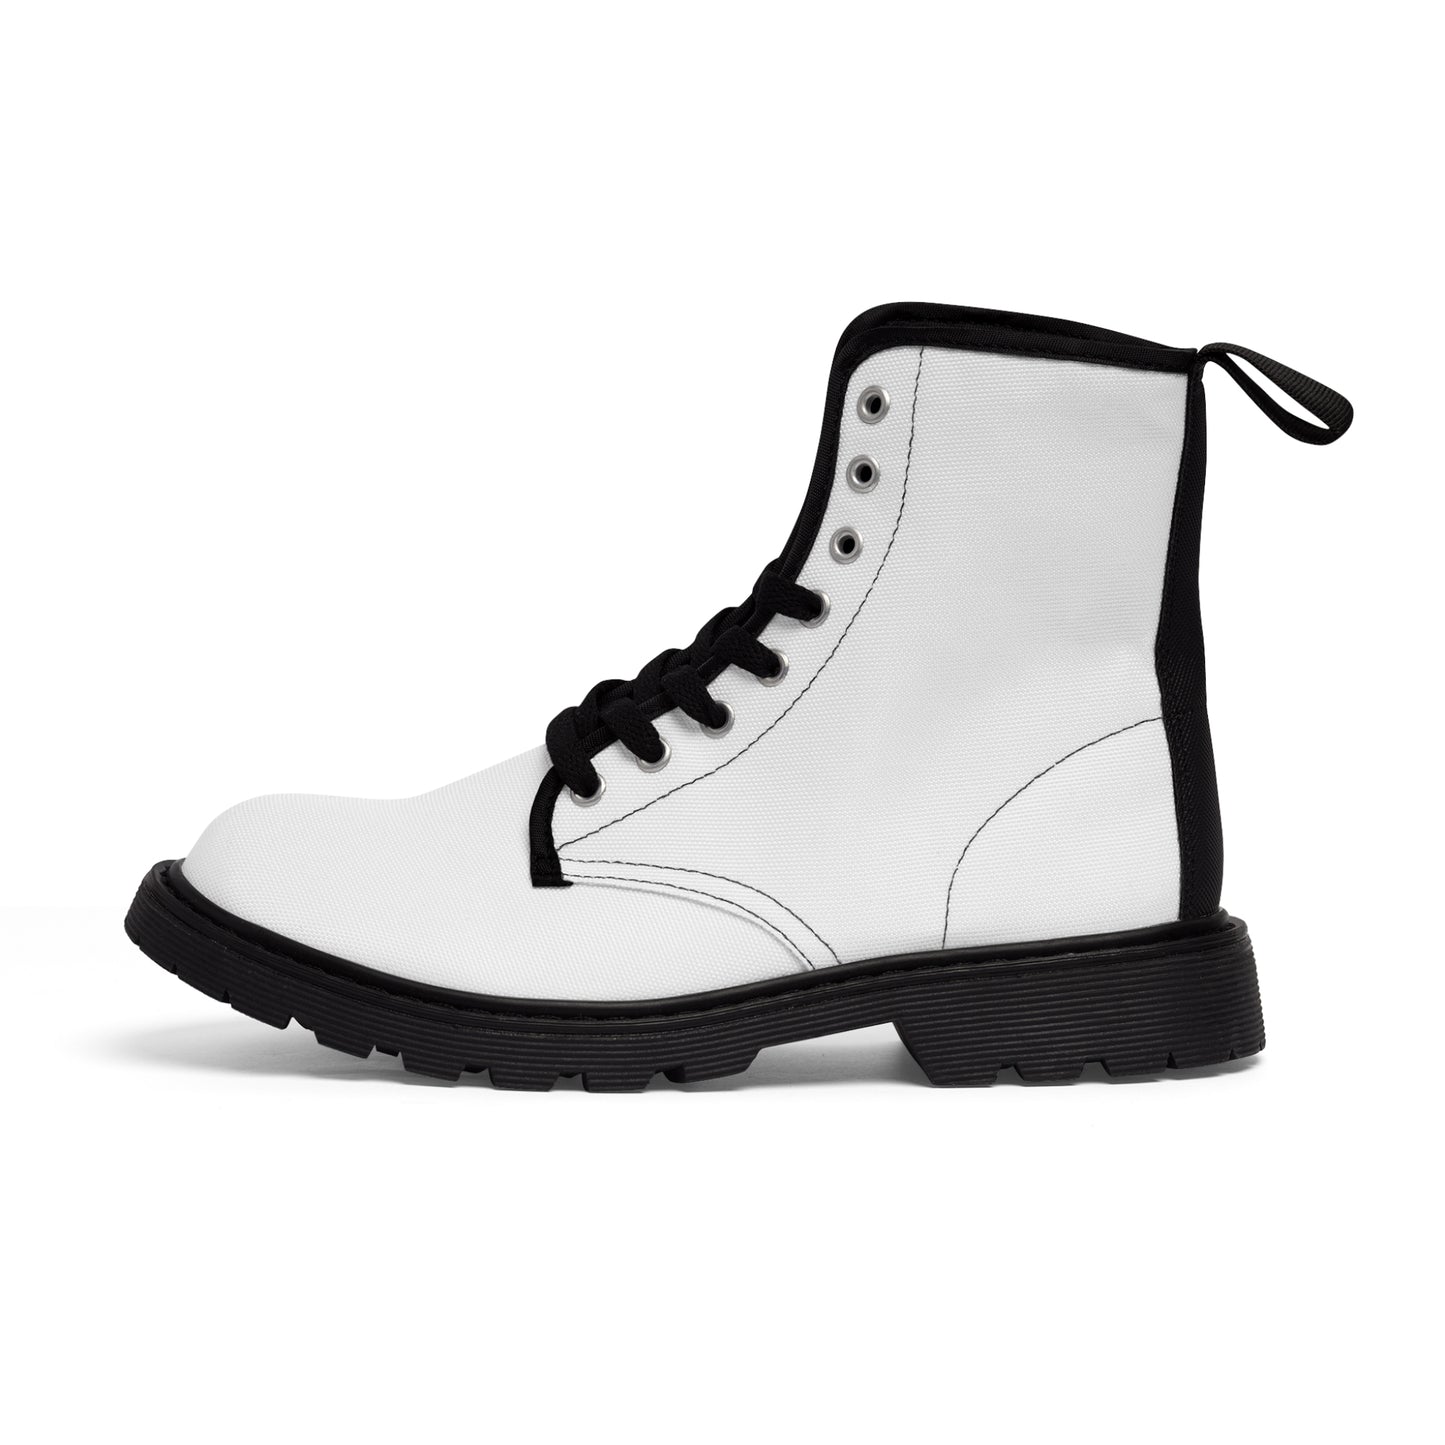 Men's Canvas Boots - Template US 10.5 Black sole